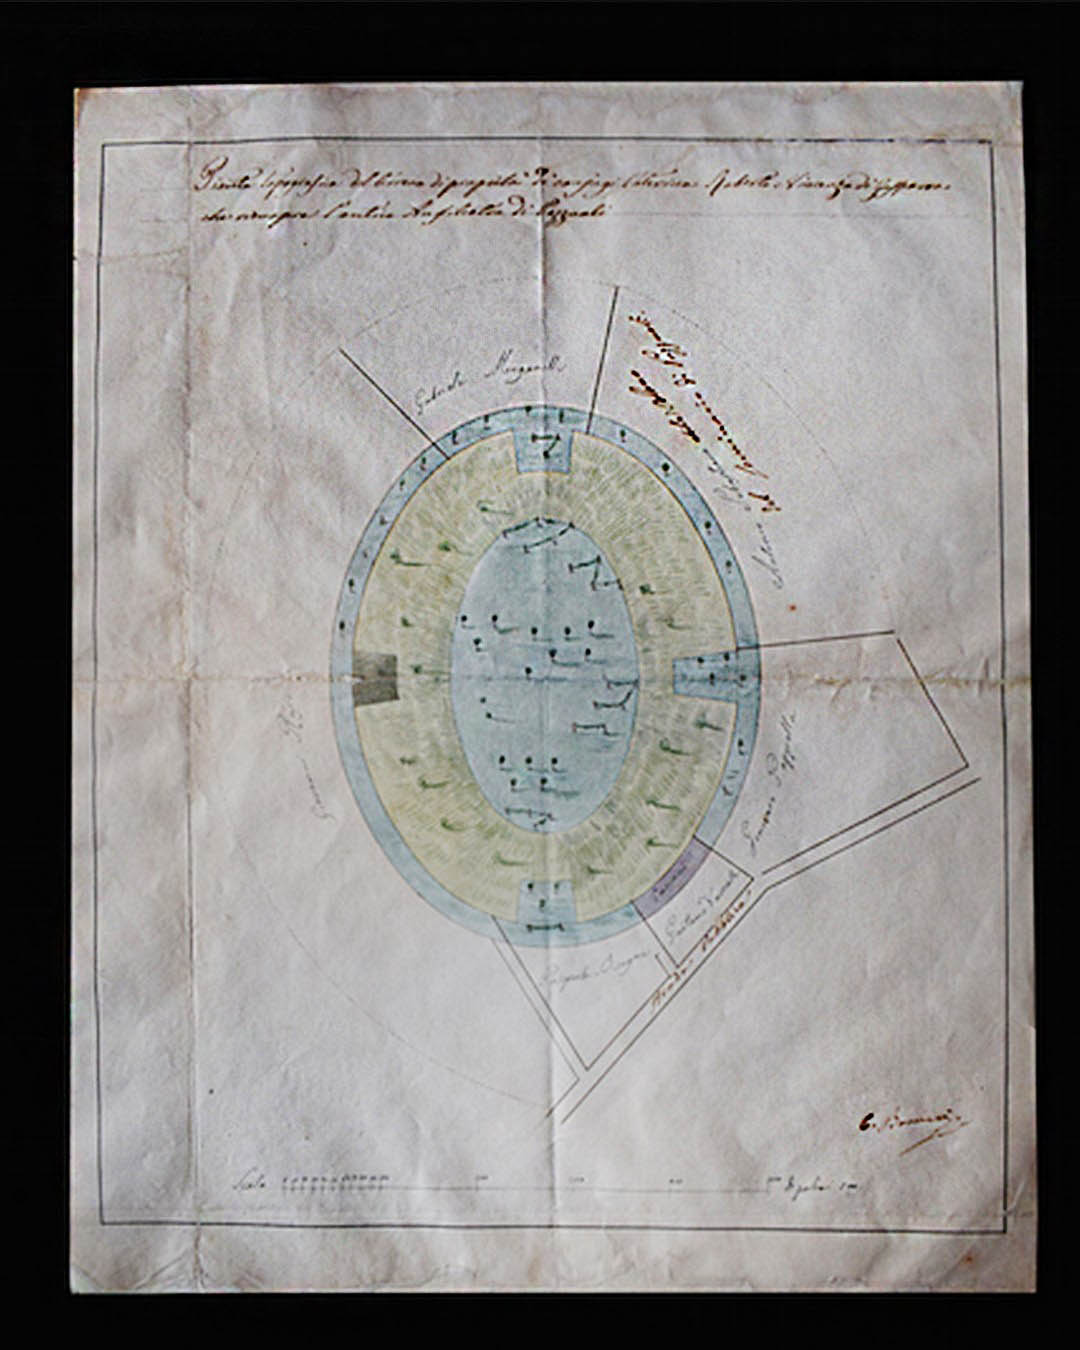 Antonio Bonucci, Pianta che illustra le principali proprietà dell’arena dell’anfiteatro di Pozzuoli